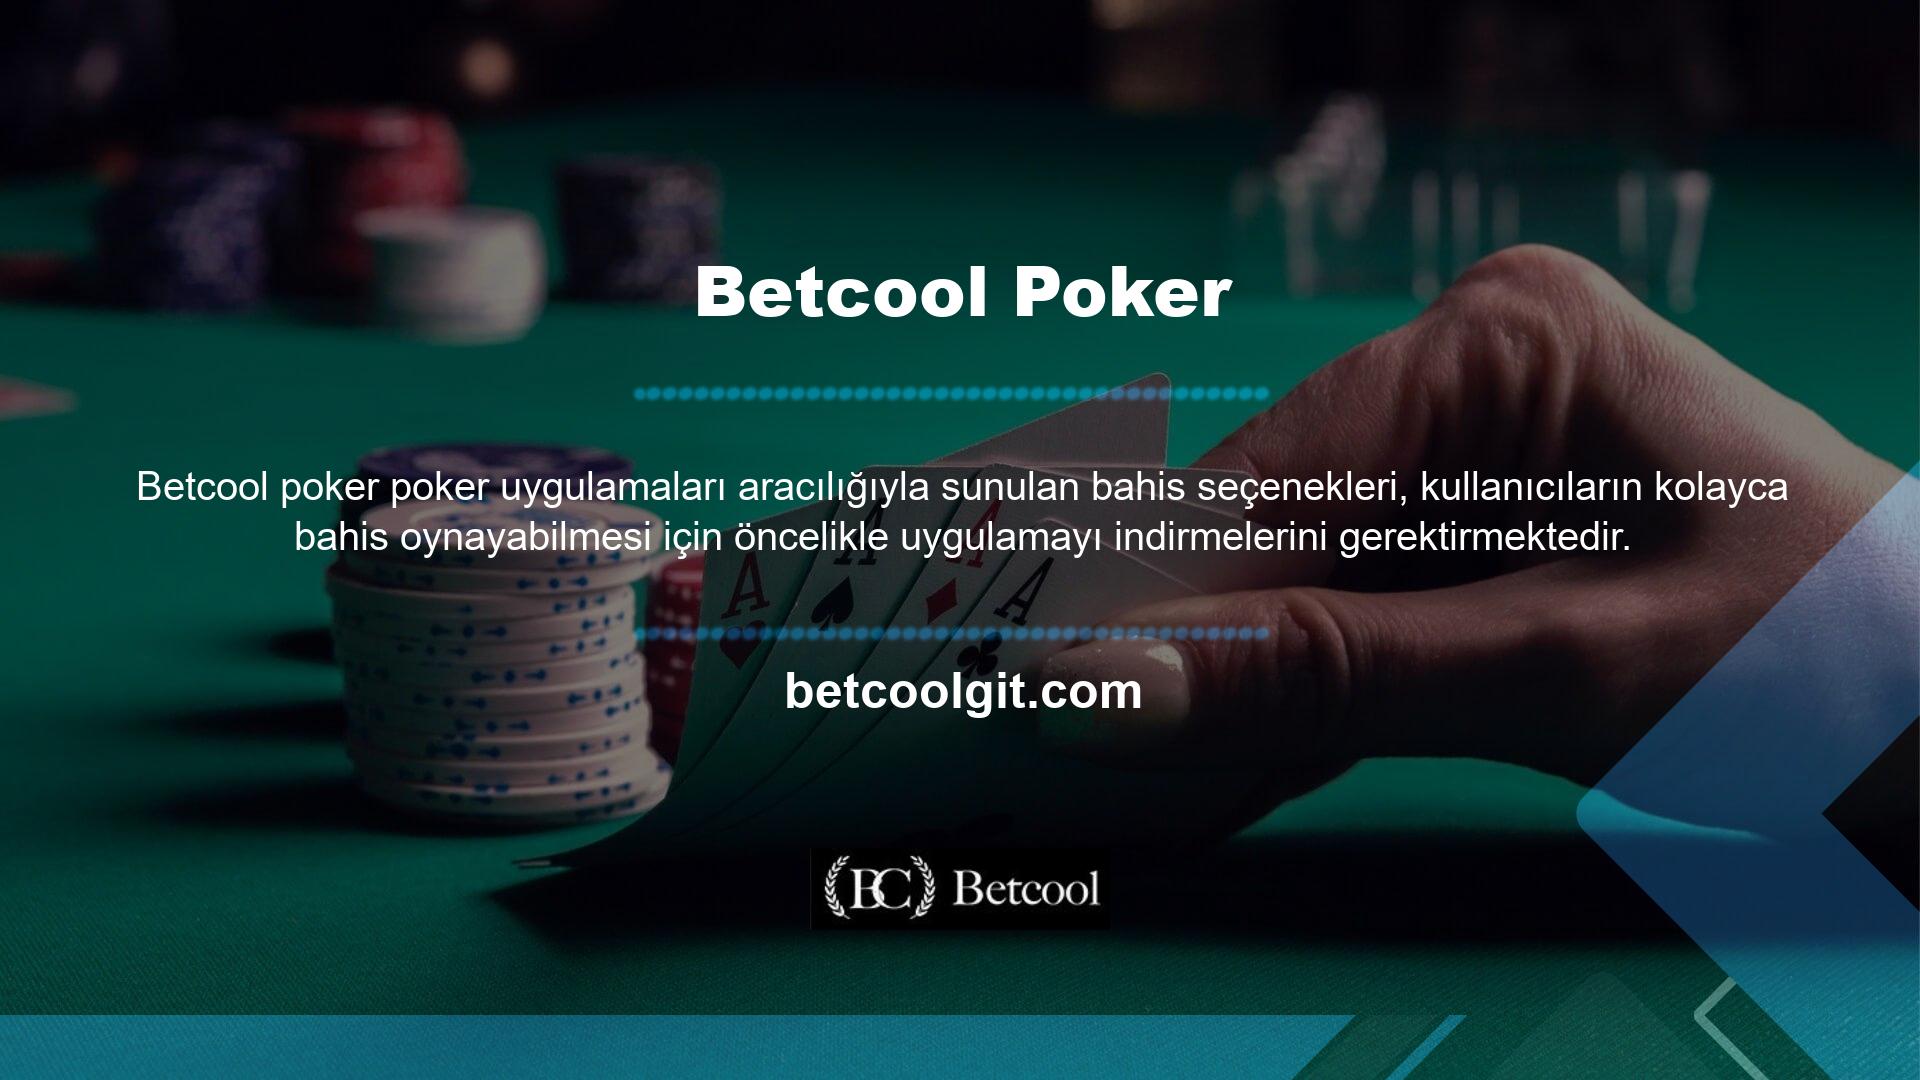 Betcool Poker nasıl oynanır ile ilgili sorular bu uygulama kullanılarak uygulama içerisinde cevaplanacaktır